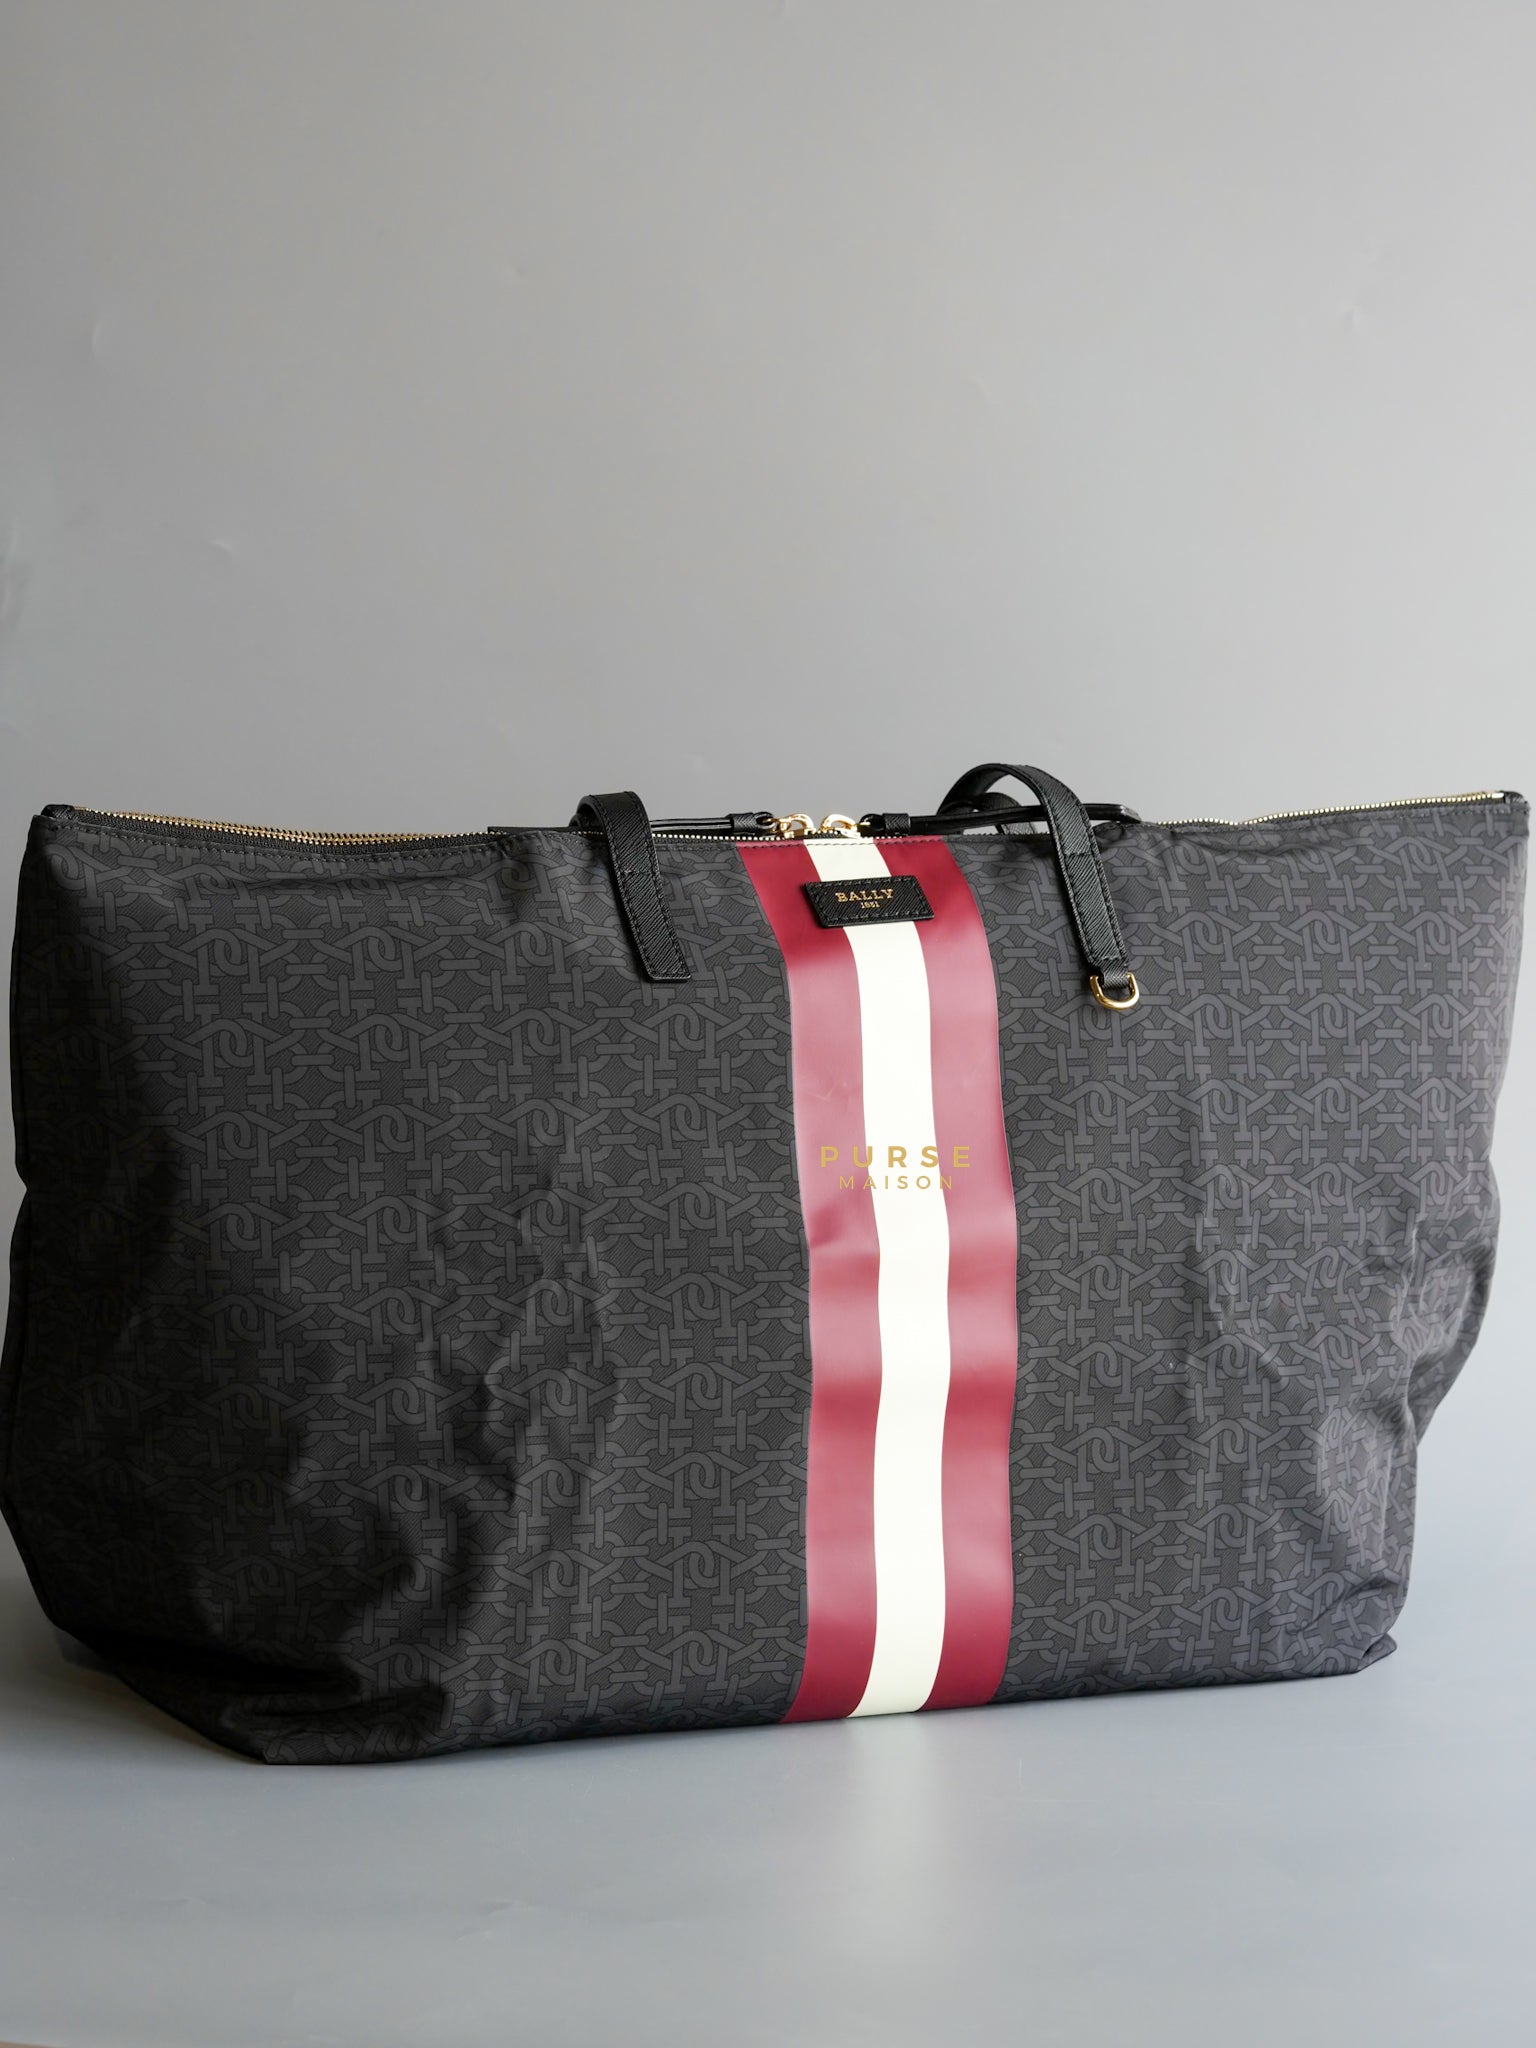 Foldable Black Tote Bag | Purse Maison Luxury Bags Shop